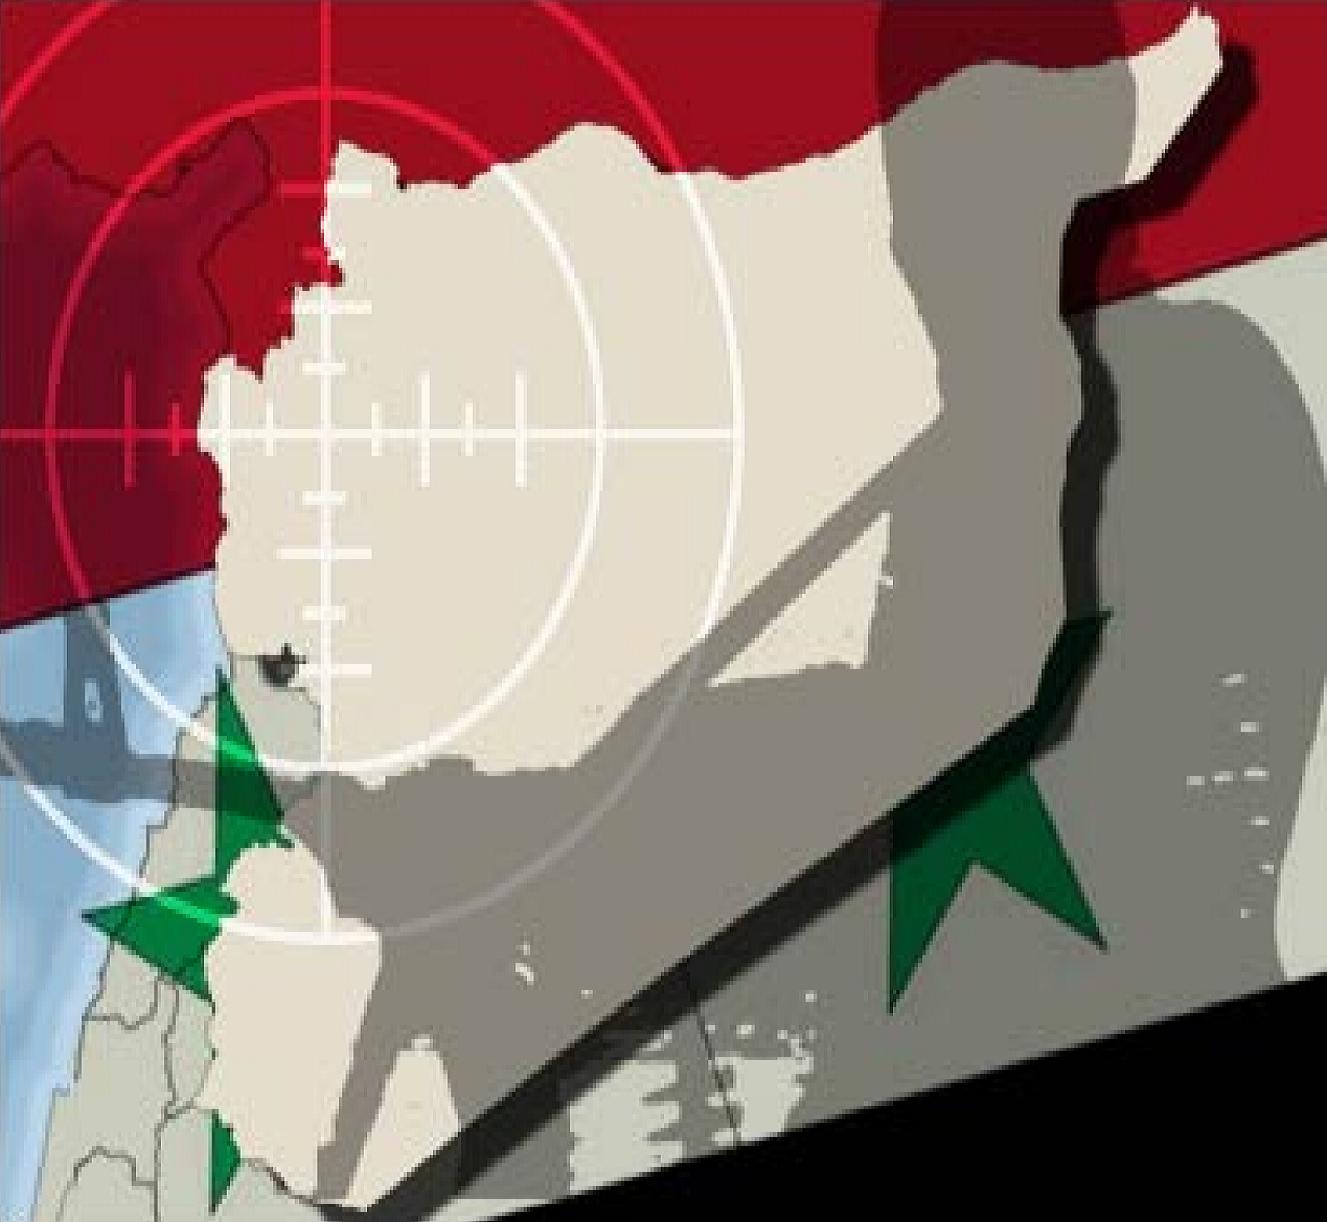 Syria: Washington’s Latest War Crime